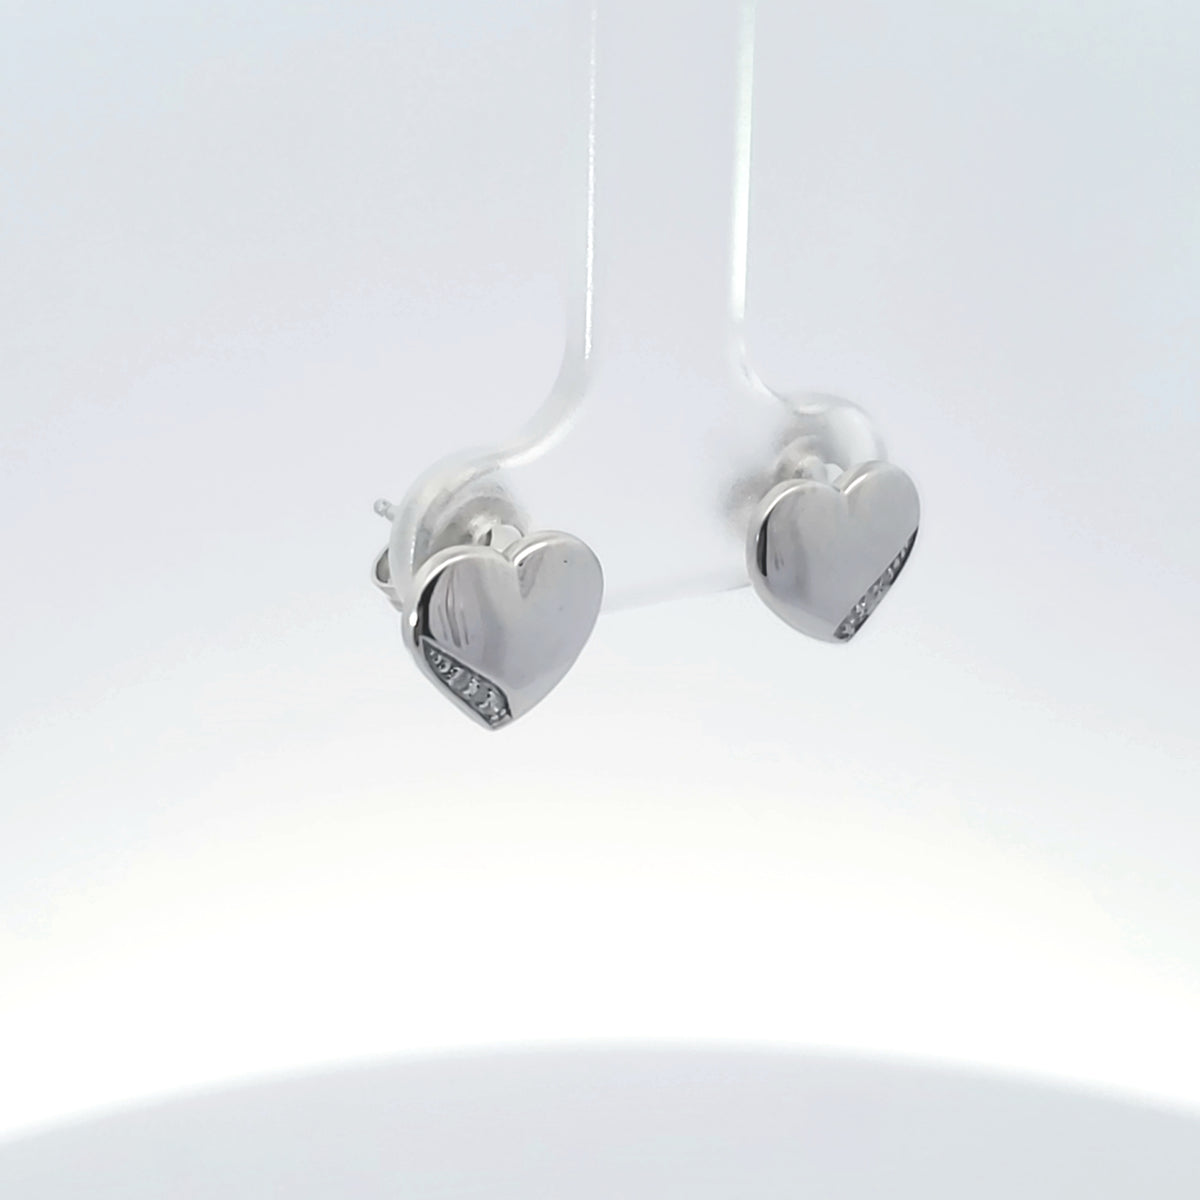 10K White Gold 0.024 cttw Diamond Heart Earrings